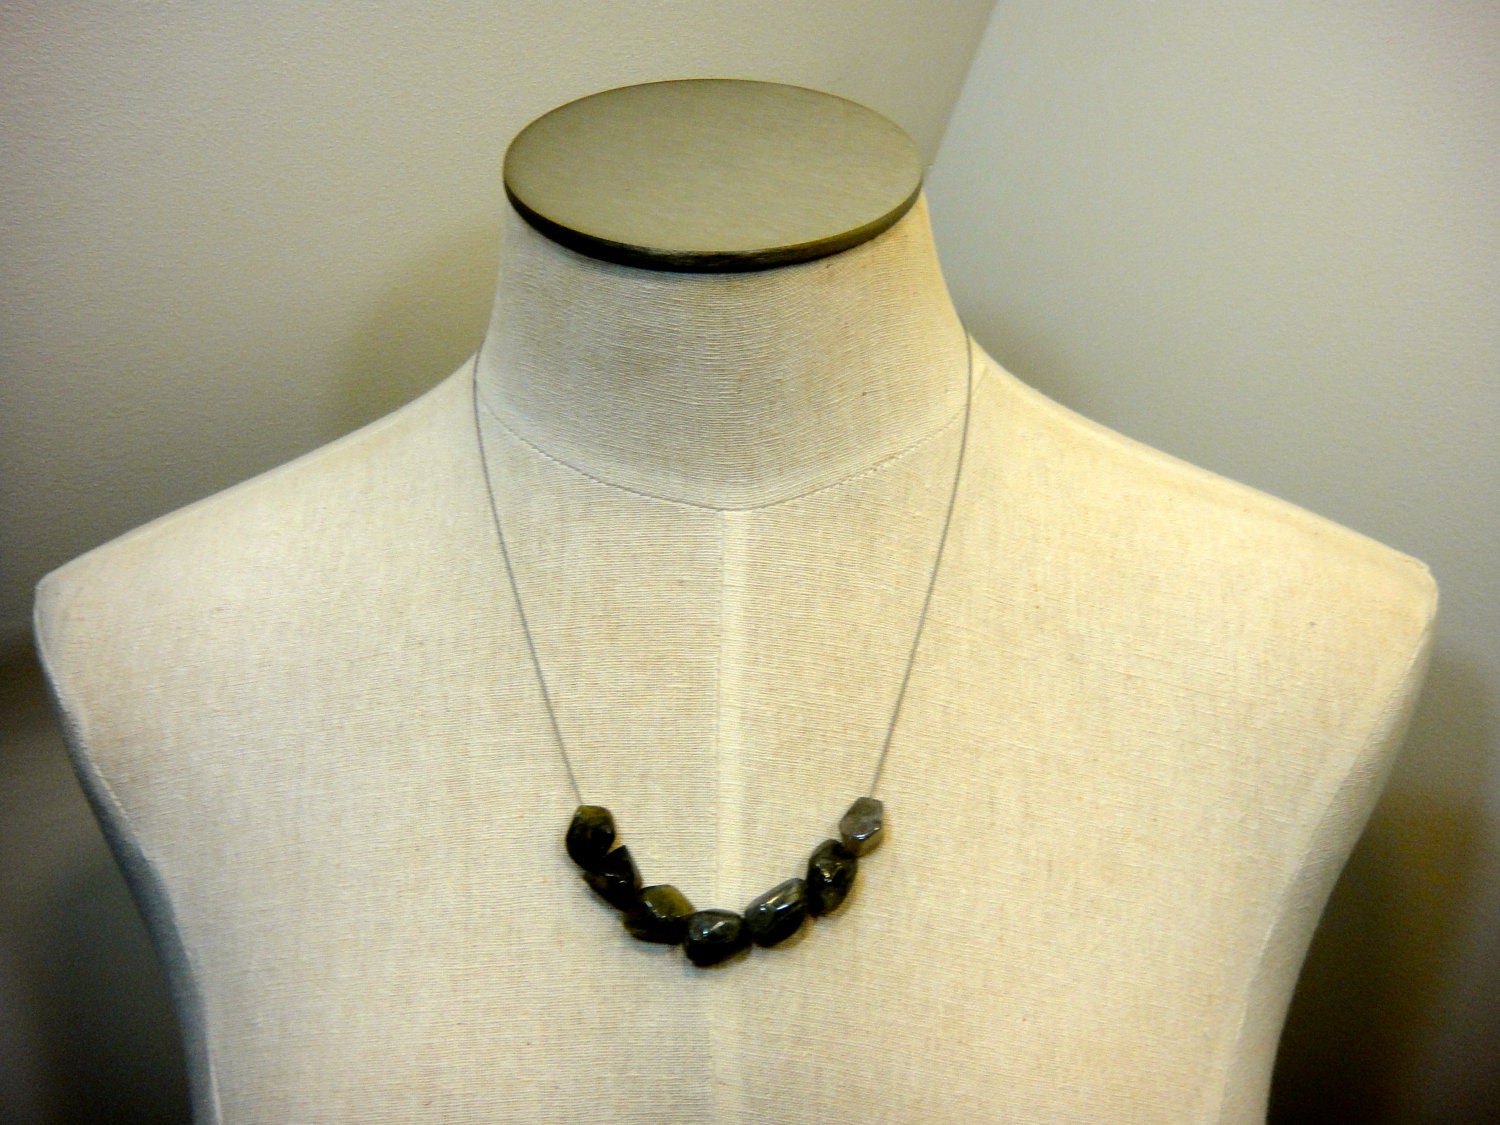 Labradorite Stone Beads